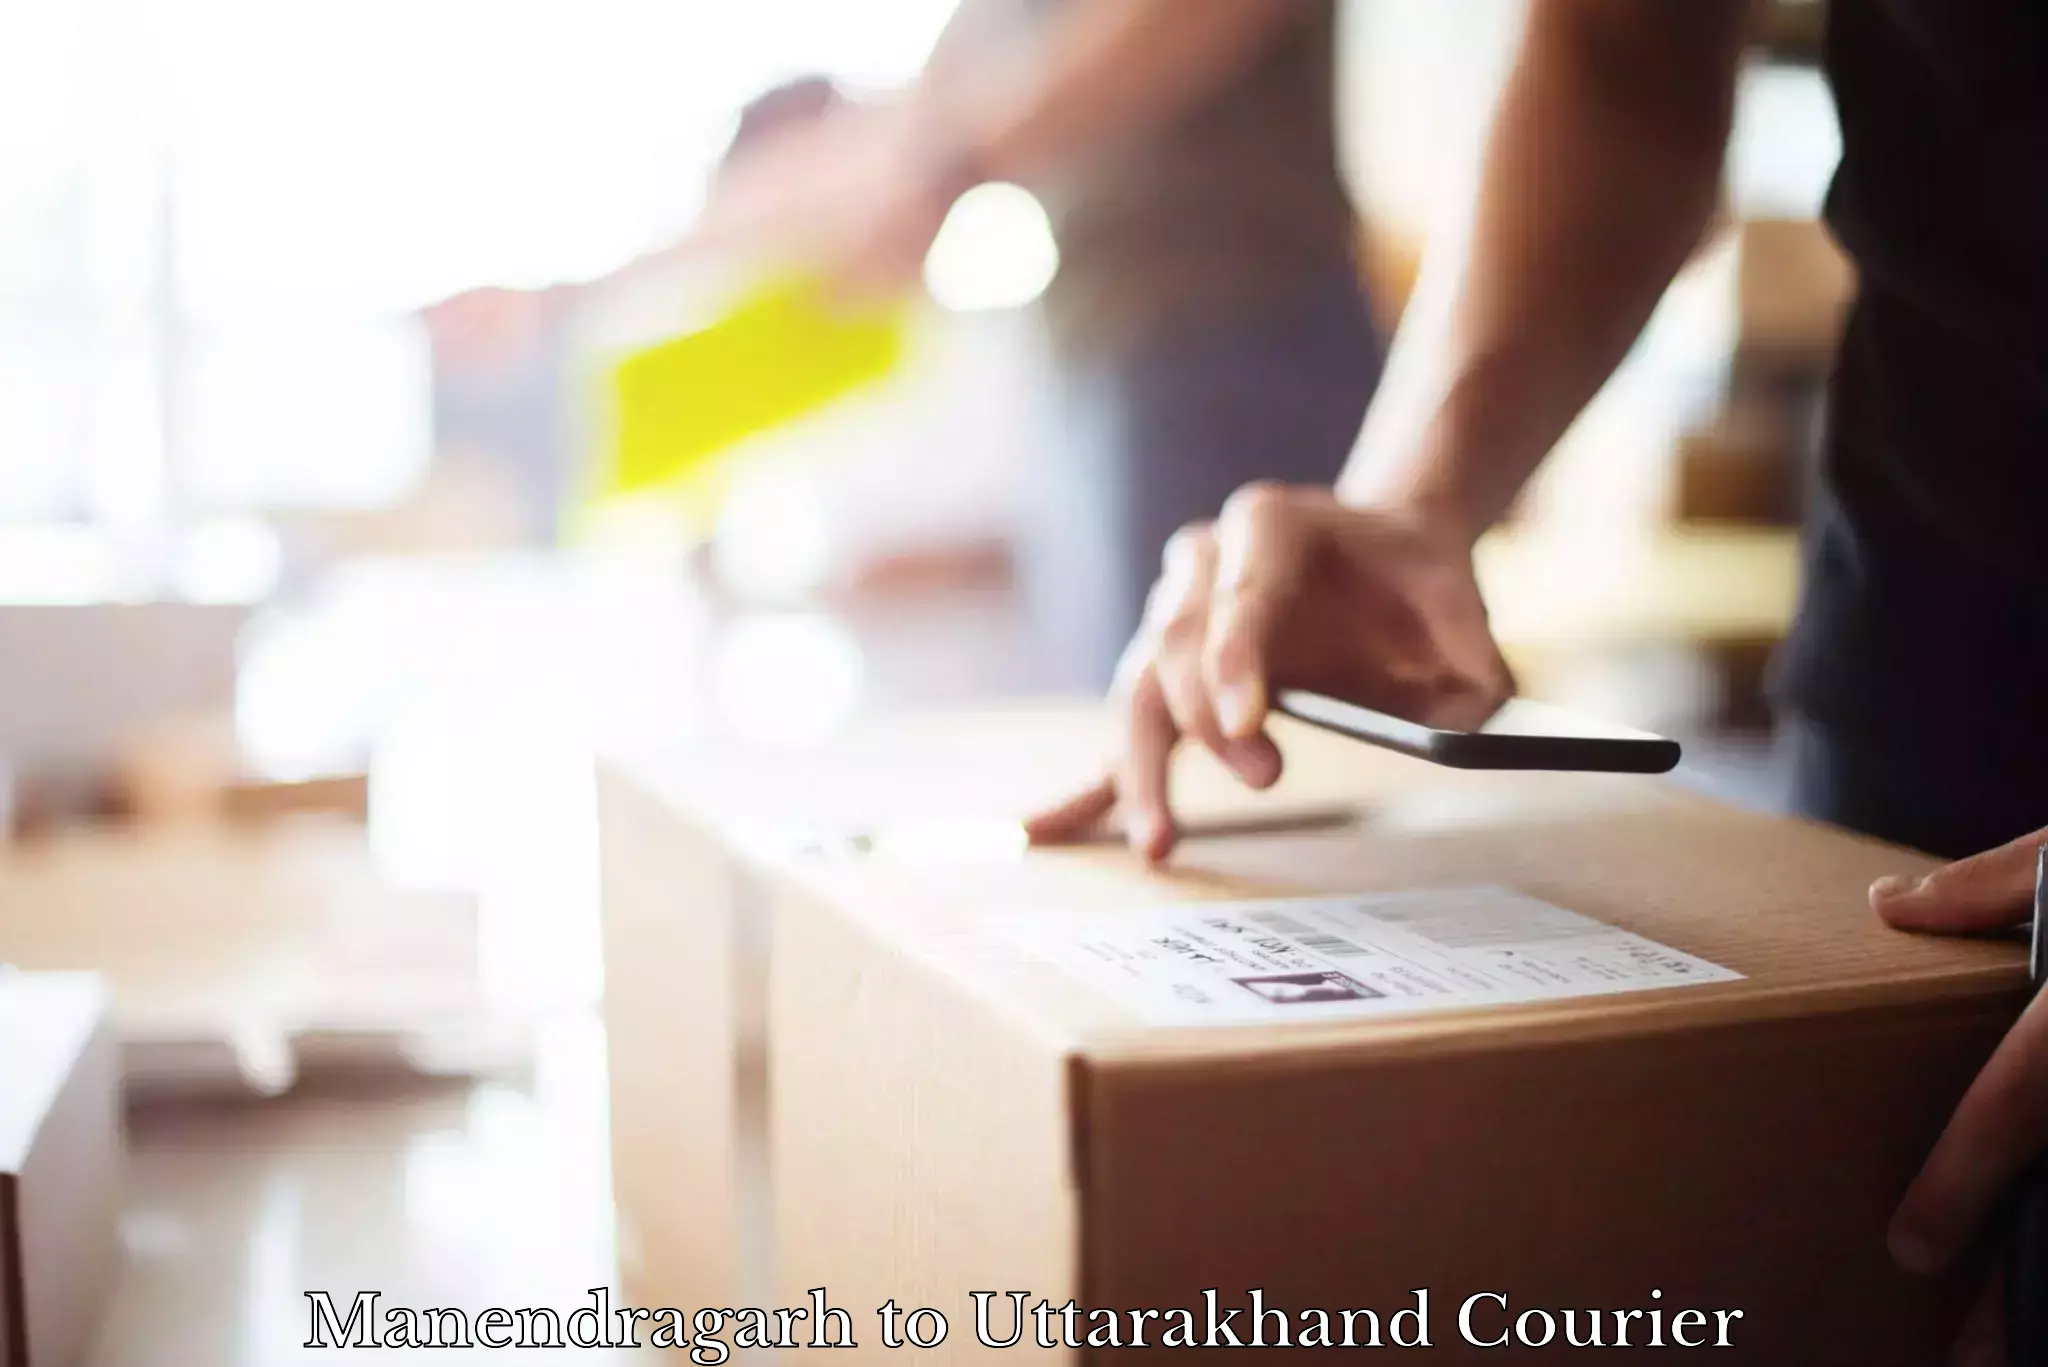 Fast delivery service Manendragarh to Dehradun